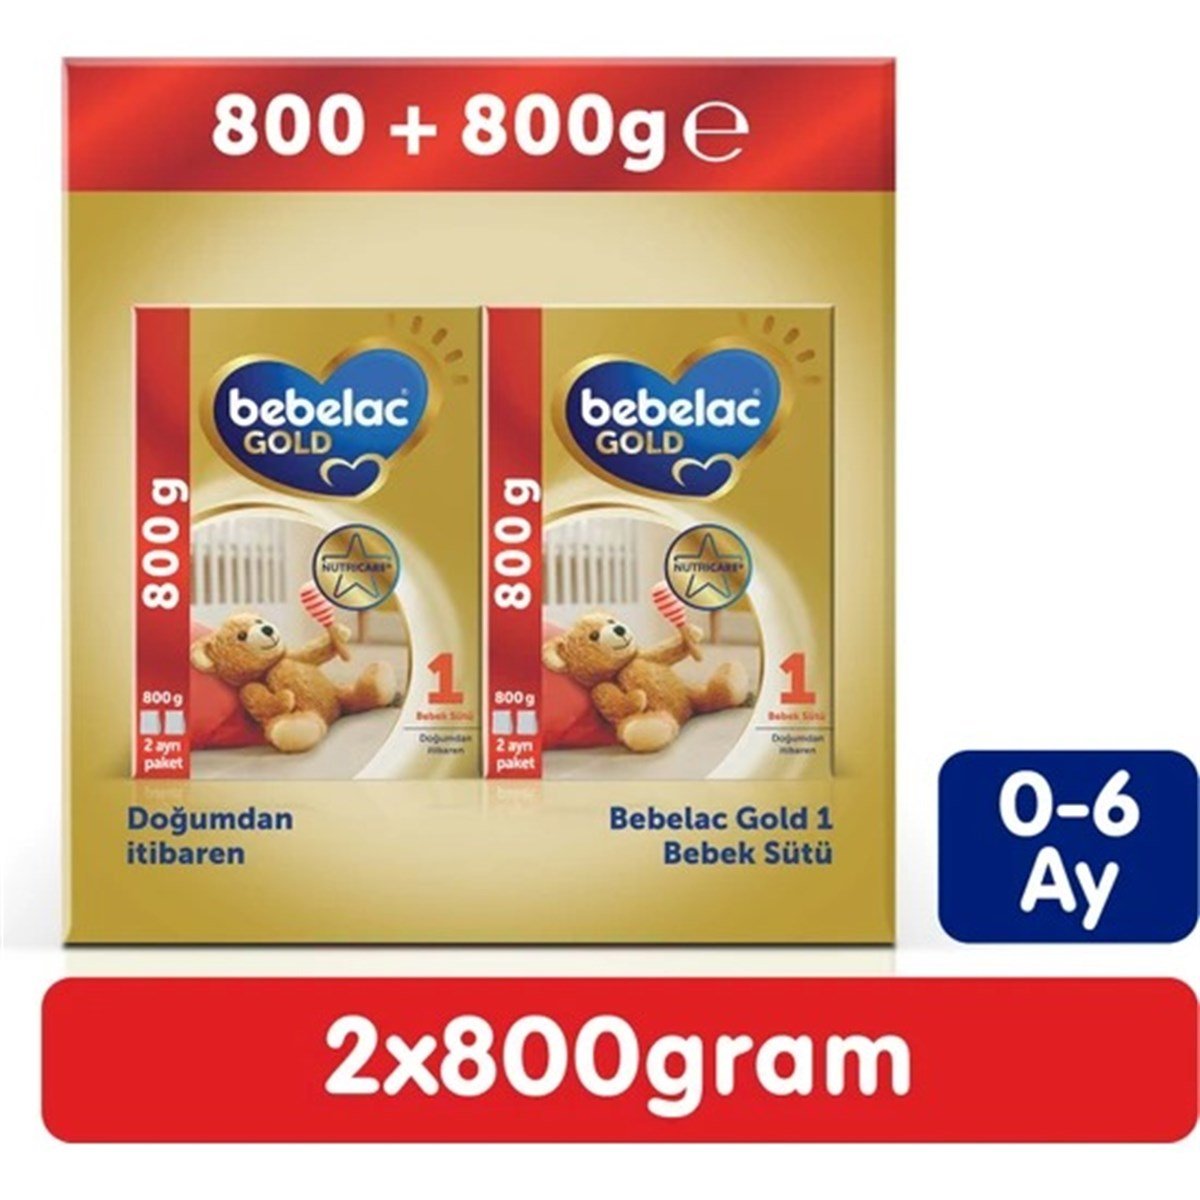 Bebelac Gold 1 Bebek Sütü 1600 gr (800 gr + 800 Gr) 0-6 Ay - Minimoda